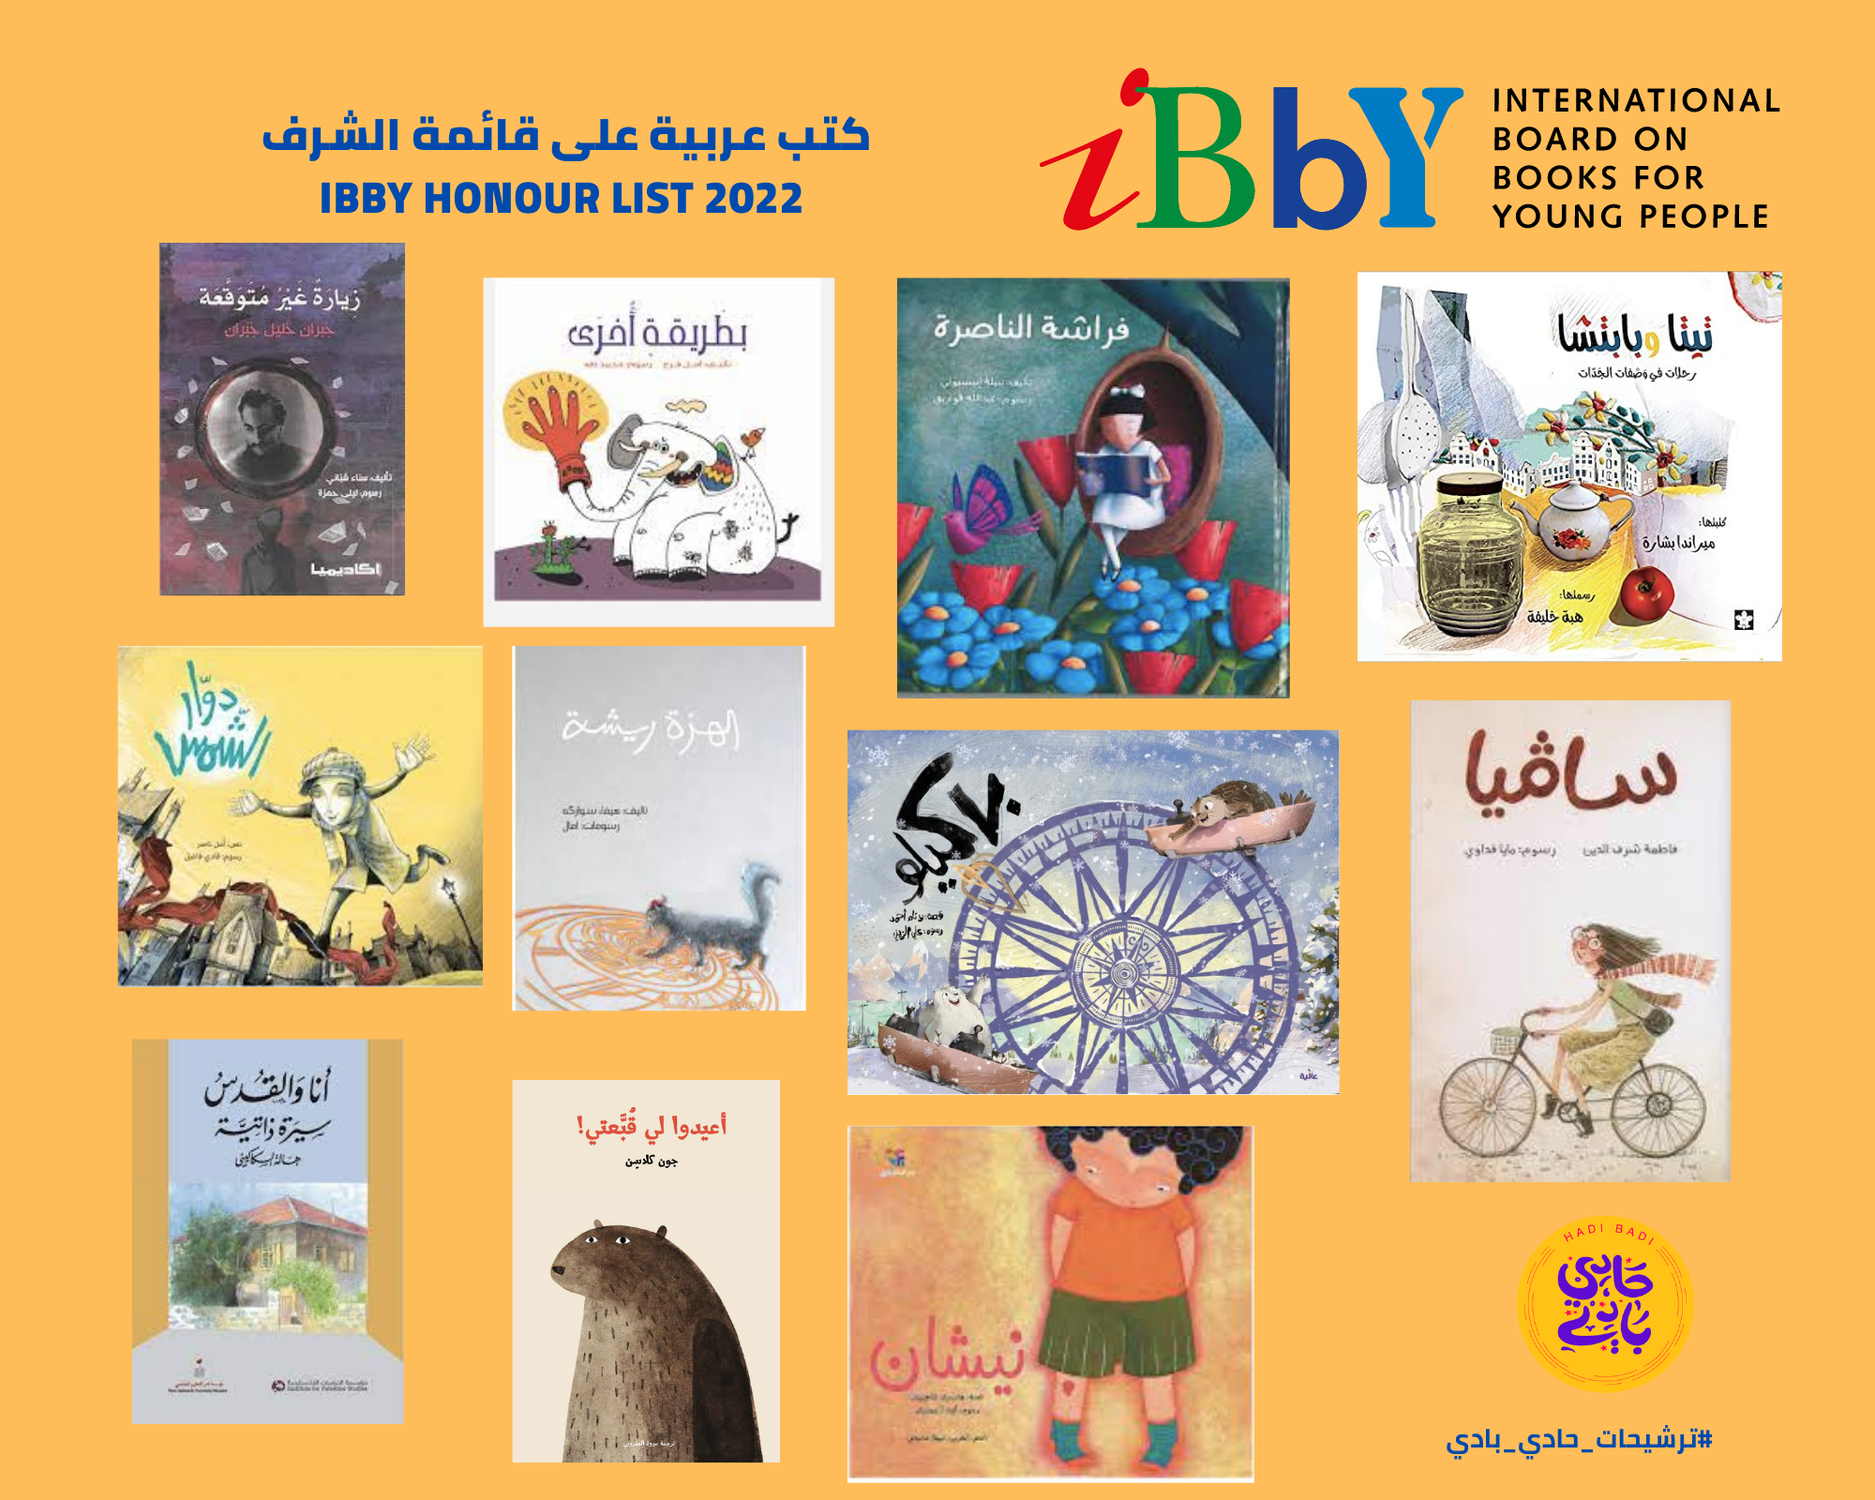 I migliori libri arabi per ragazz* secondo IBBY